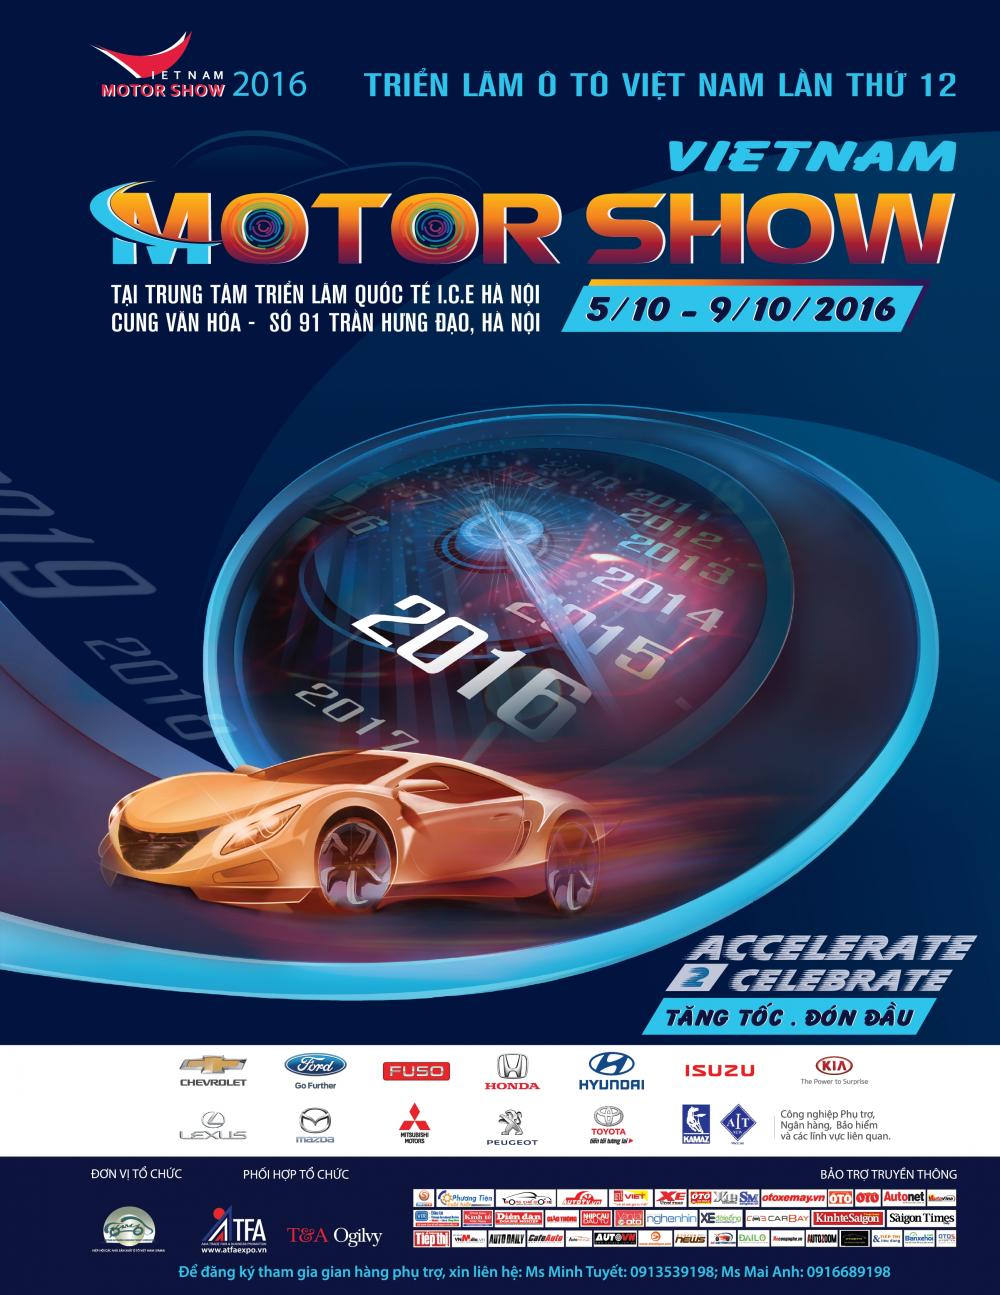 Triển lãm Ô tô Việt Nam - Vietnam Motor Show 2016 diễn ra từ ngày 05/10 đến 09/10/2016, tại Trung tâm Triển lãm Quốc tế, số 91, Trần Hưng Đạo, Quận Hoàn Kiếm, Hà Nội.